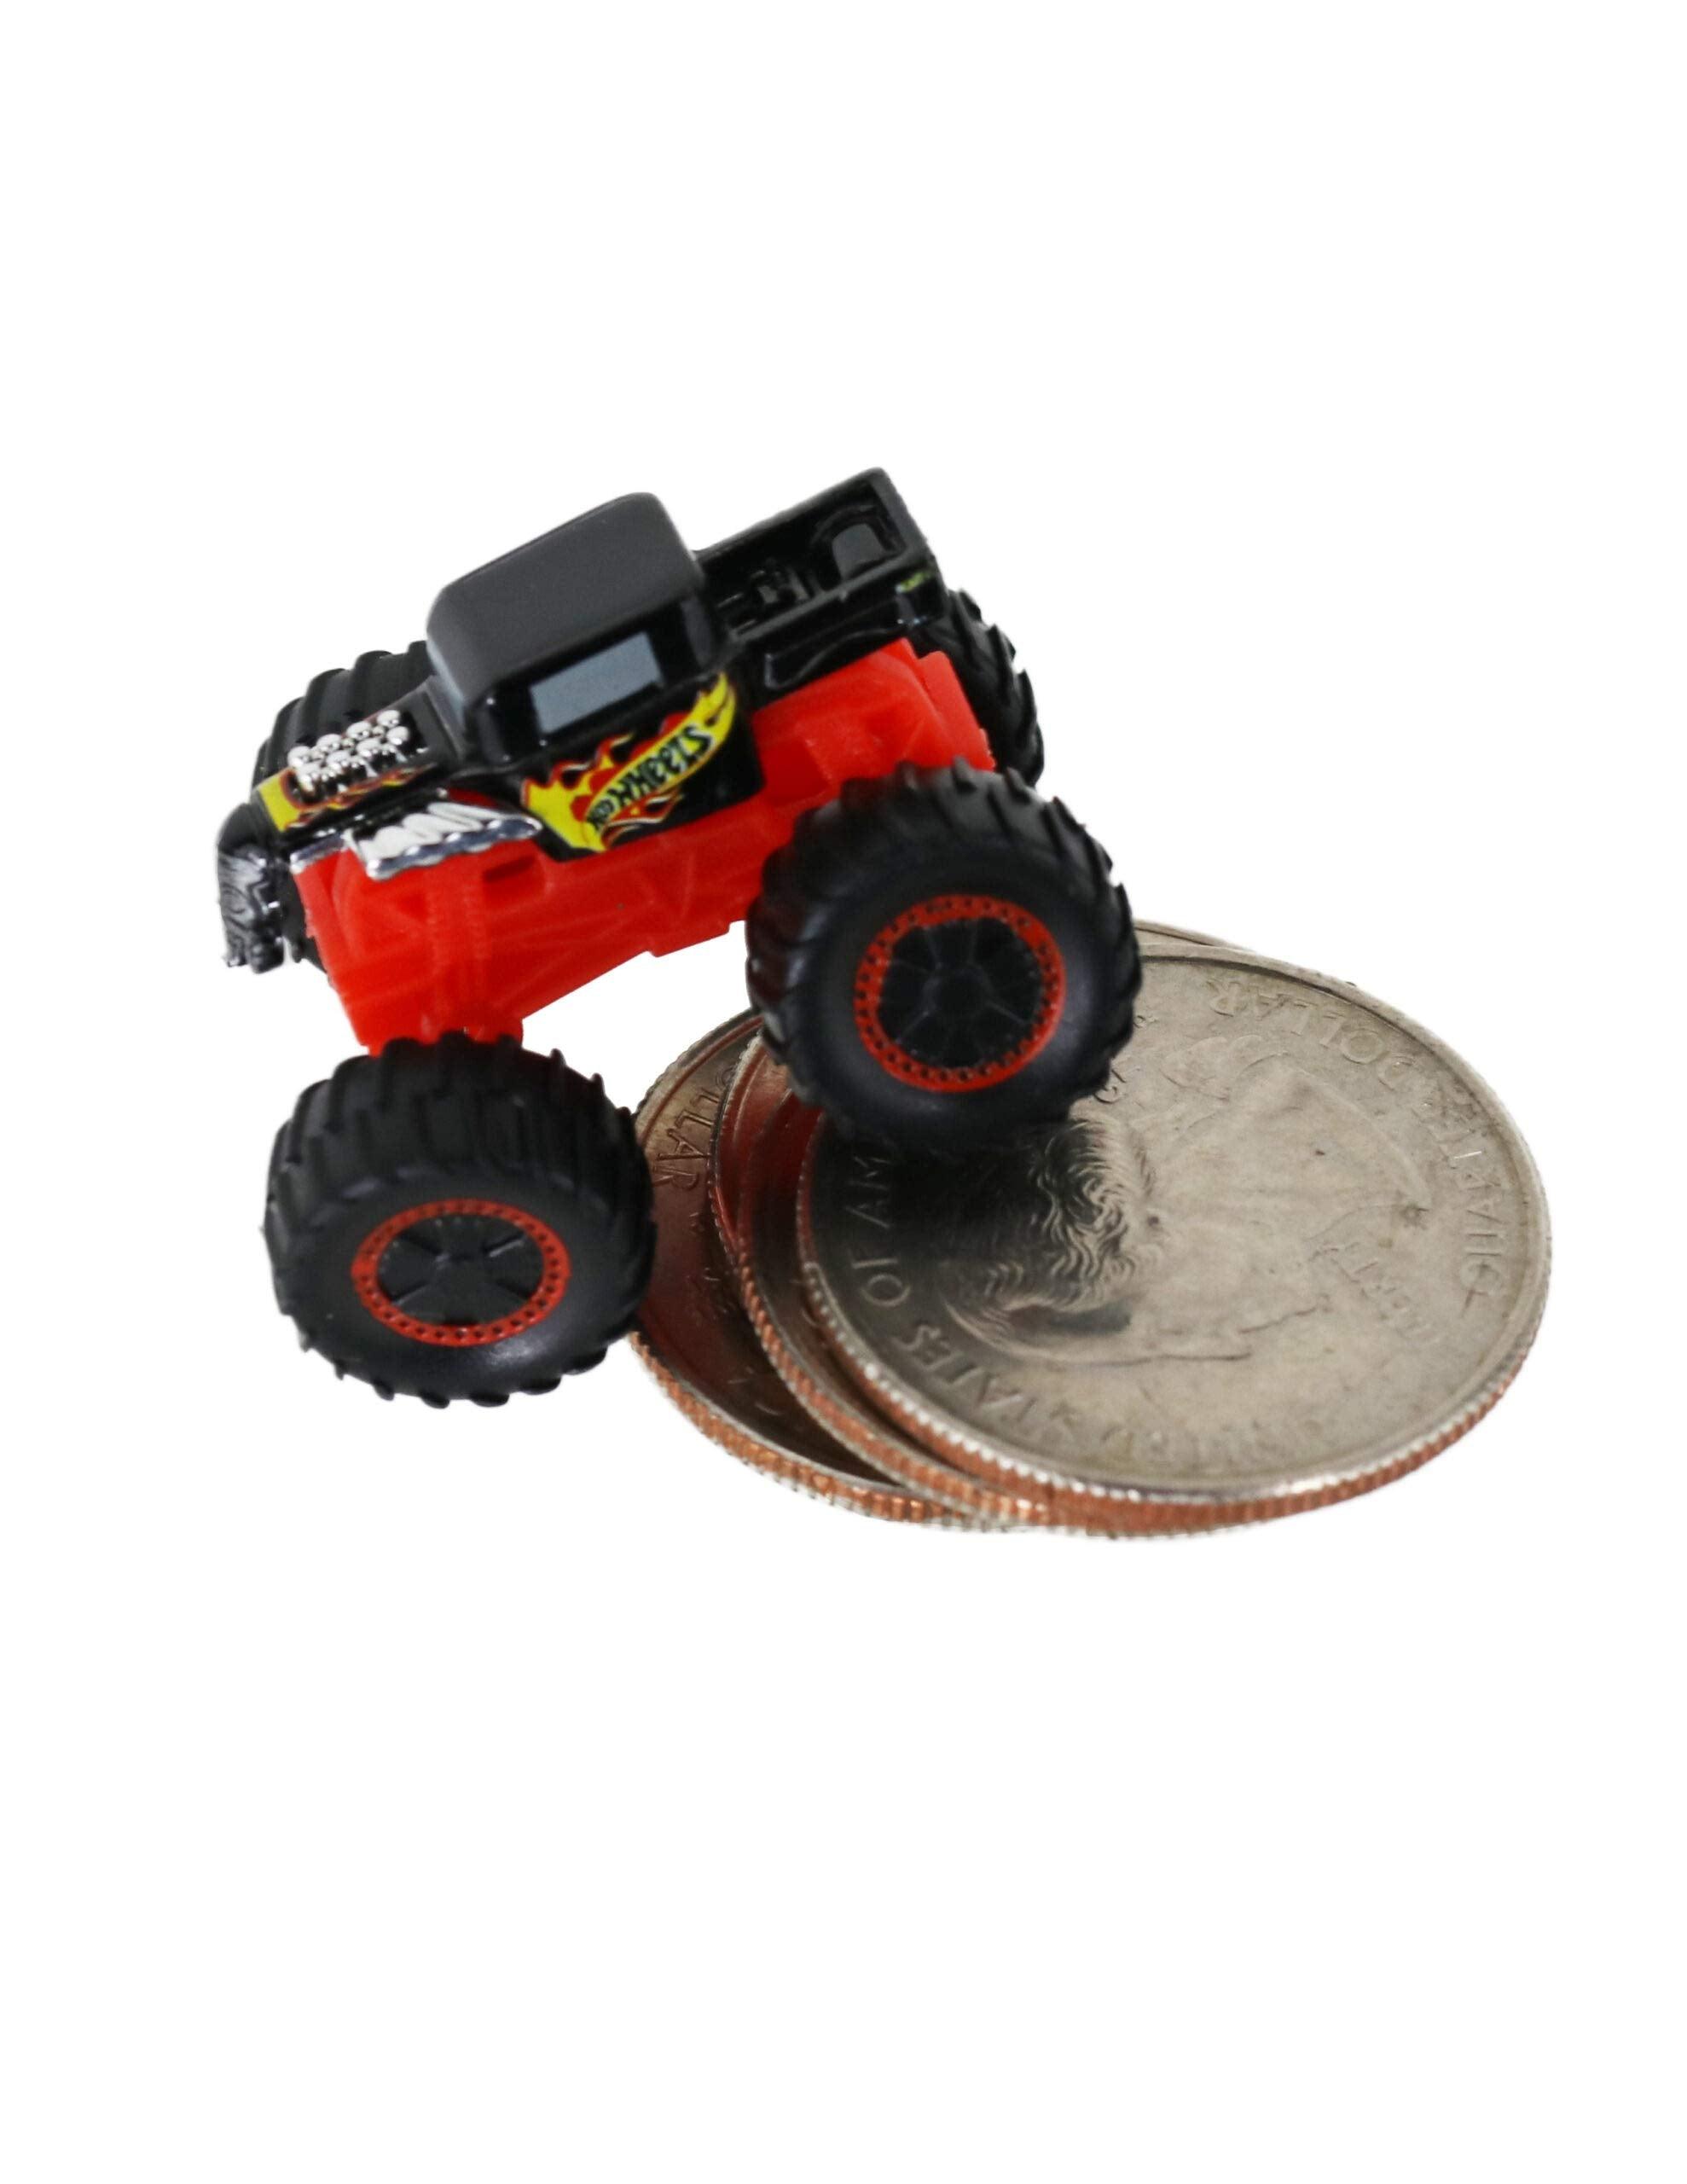  Hot Wheels Monster Trucks Bone Shaker, Includes Car : Toys &  Games